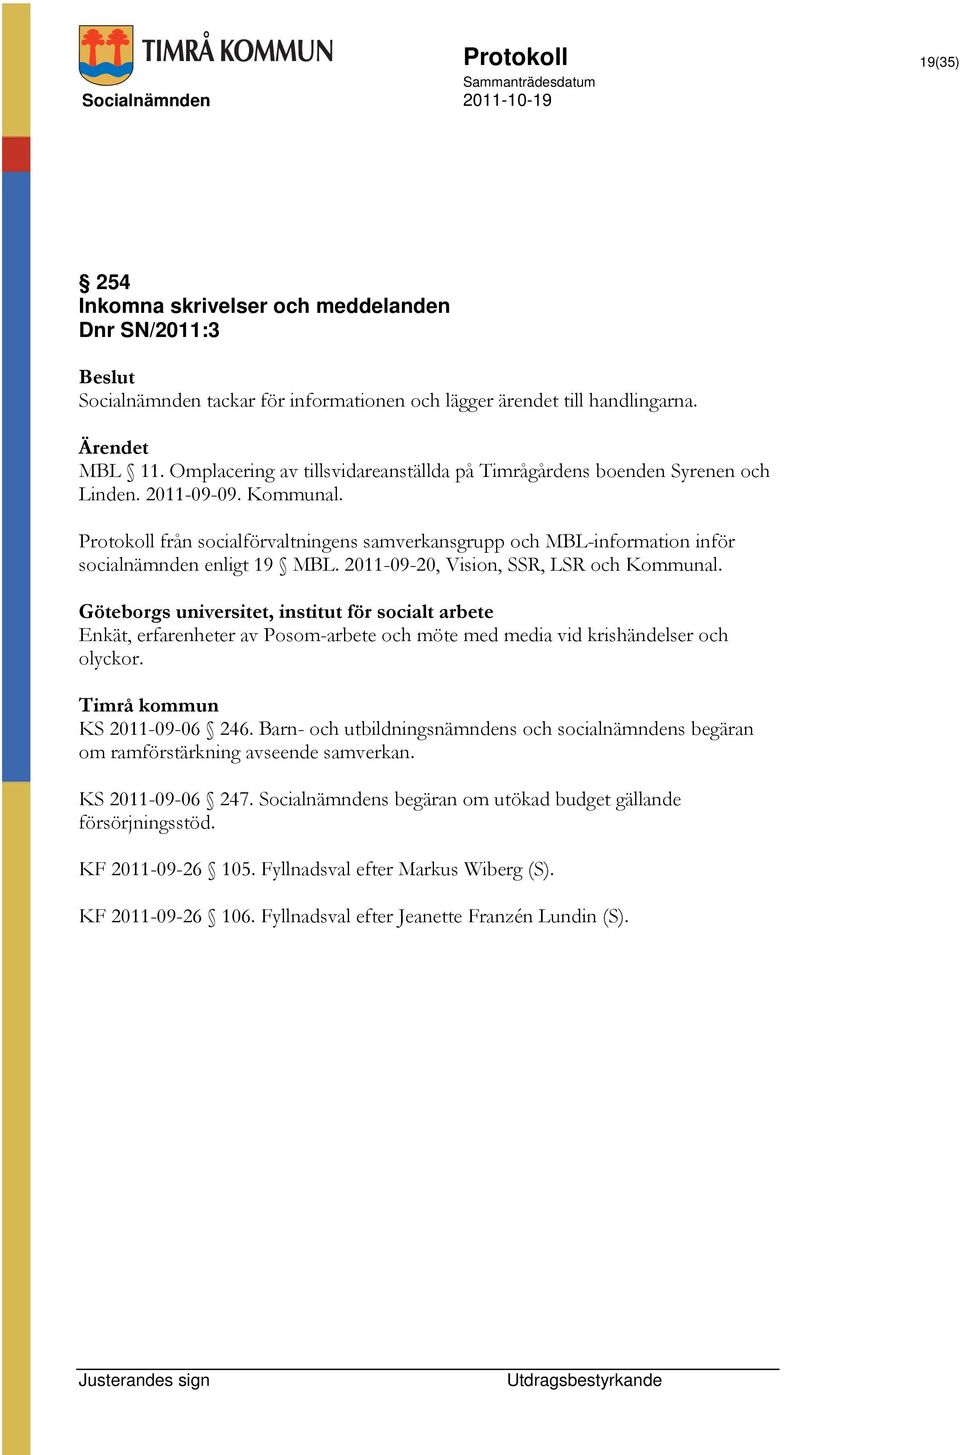 Protokoll från socialförvaltningens samverkansgrupp och MBL-information inför socialnämnden enligt 19 MBL. 2011-09-20, Vision, SSR, LSR och Kommunal.